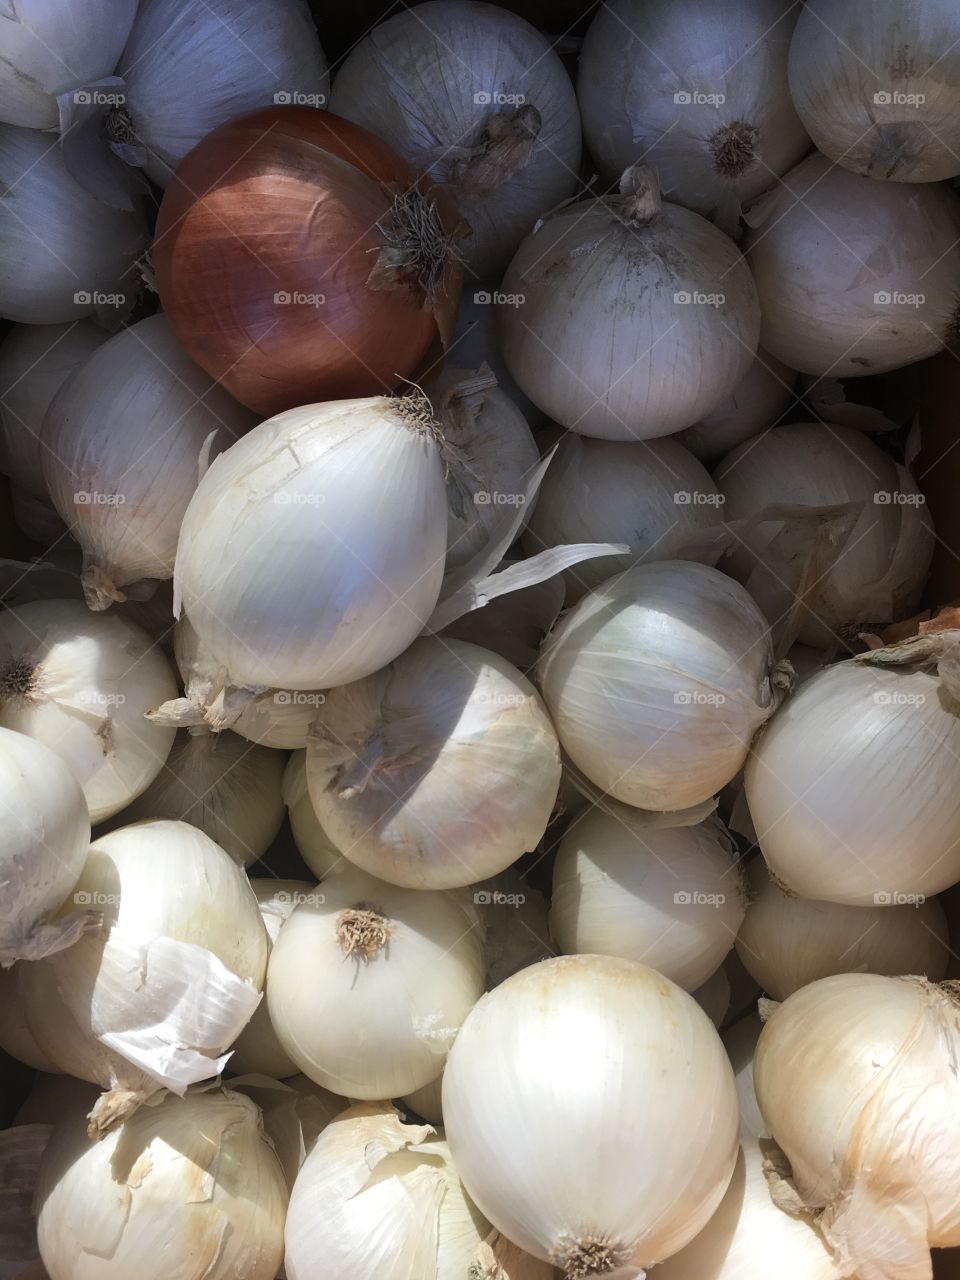 White onions in a bin